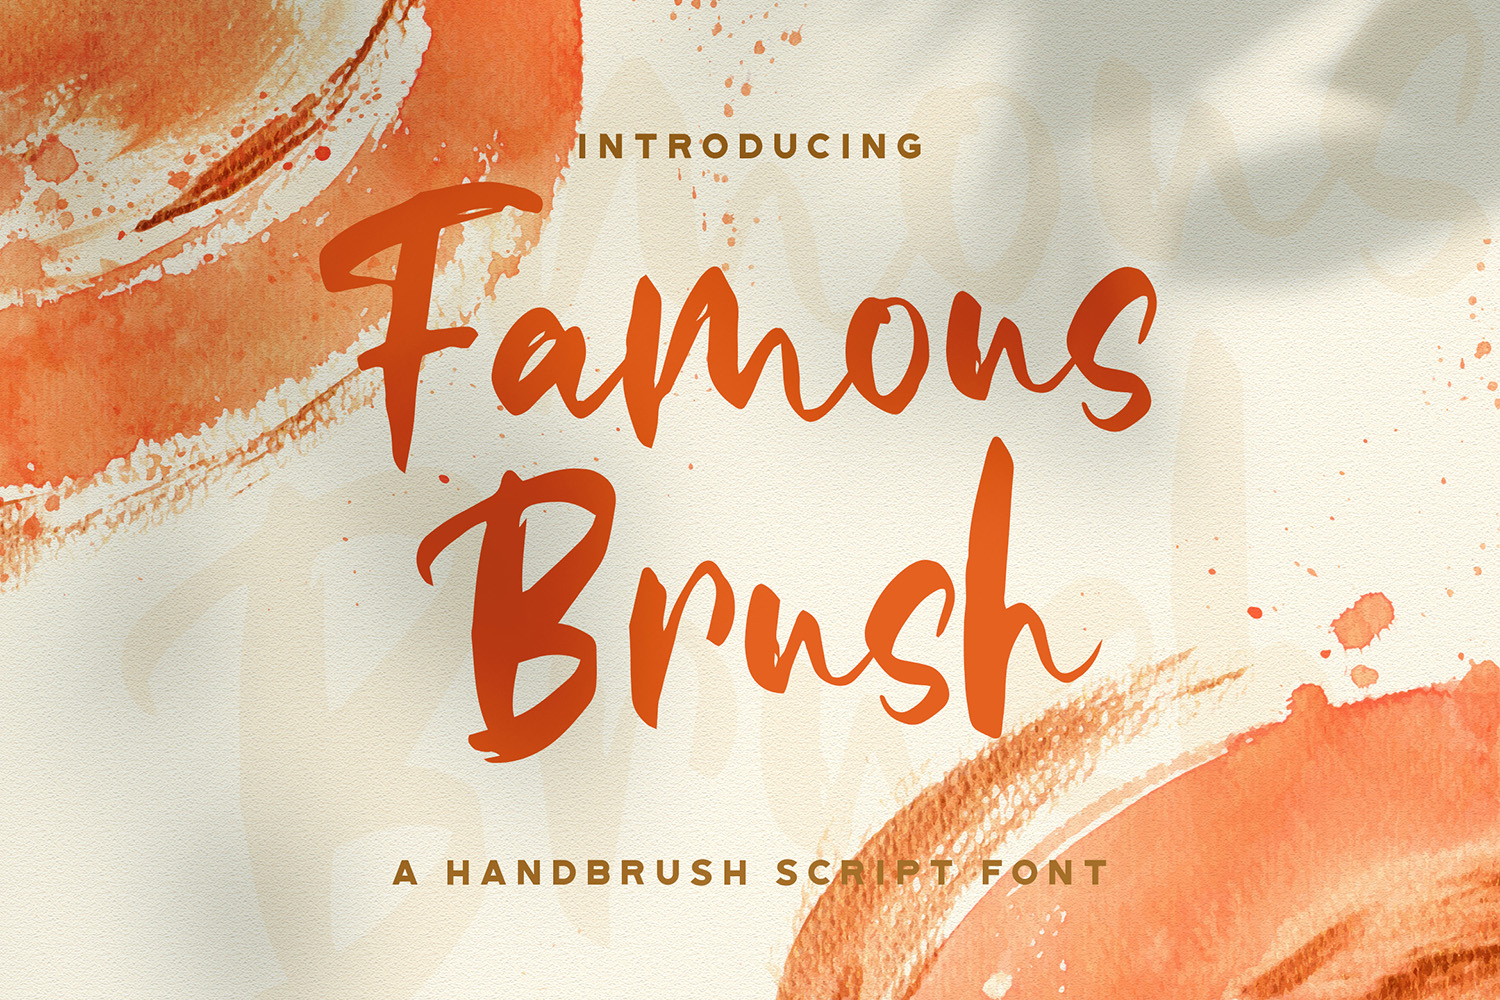 Famous Brush Free Font